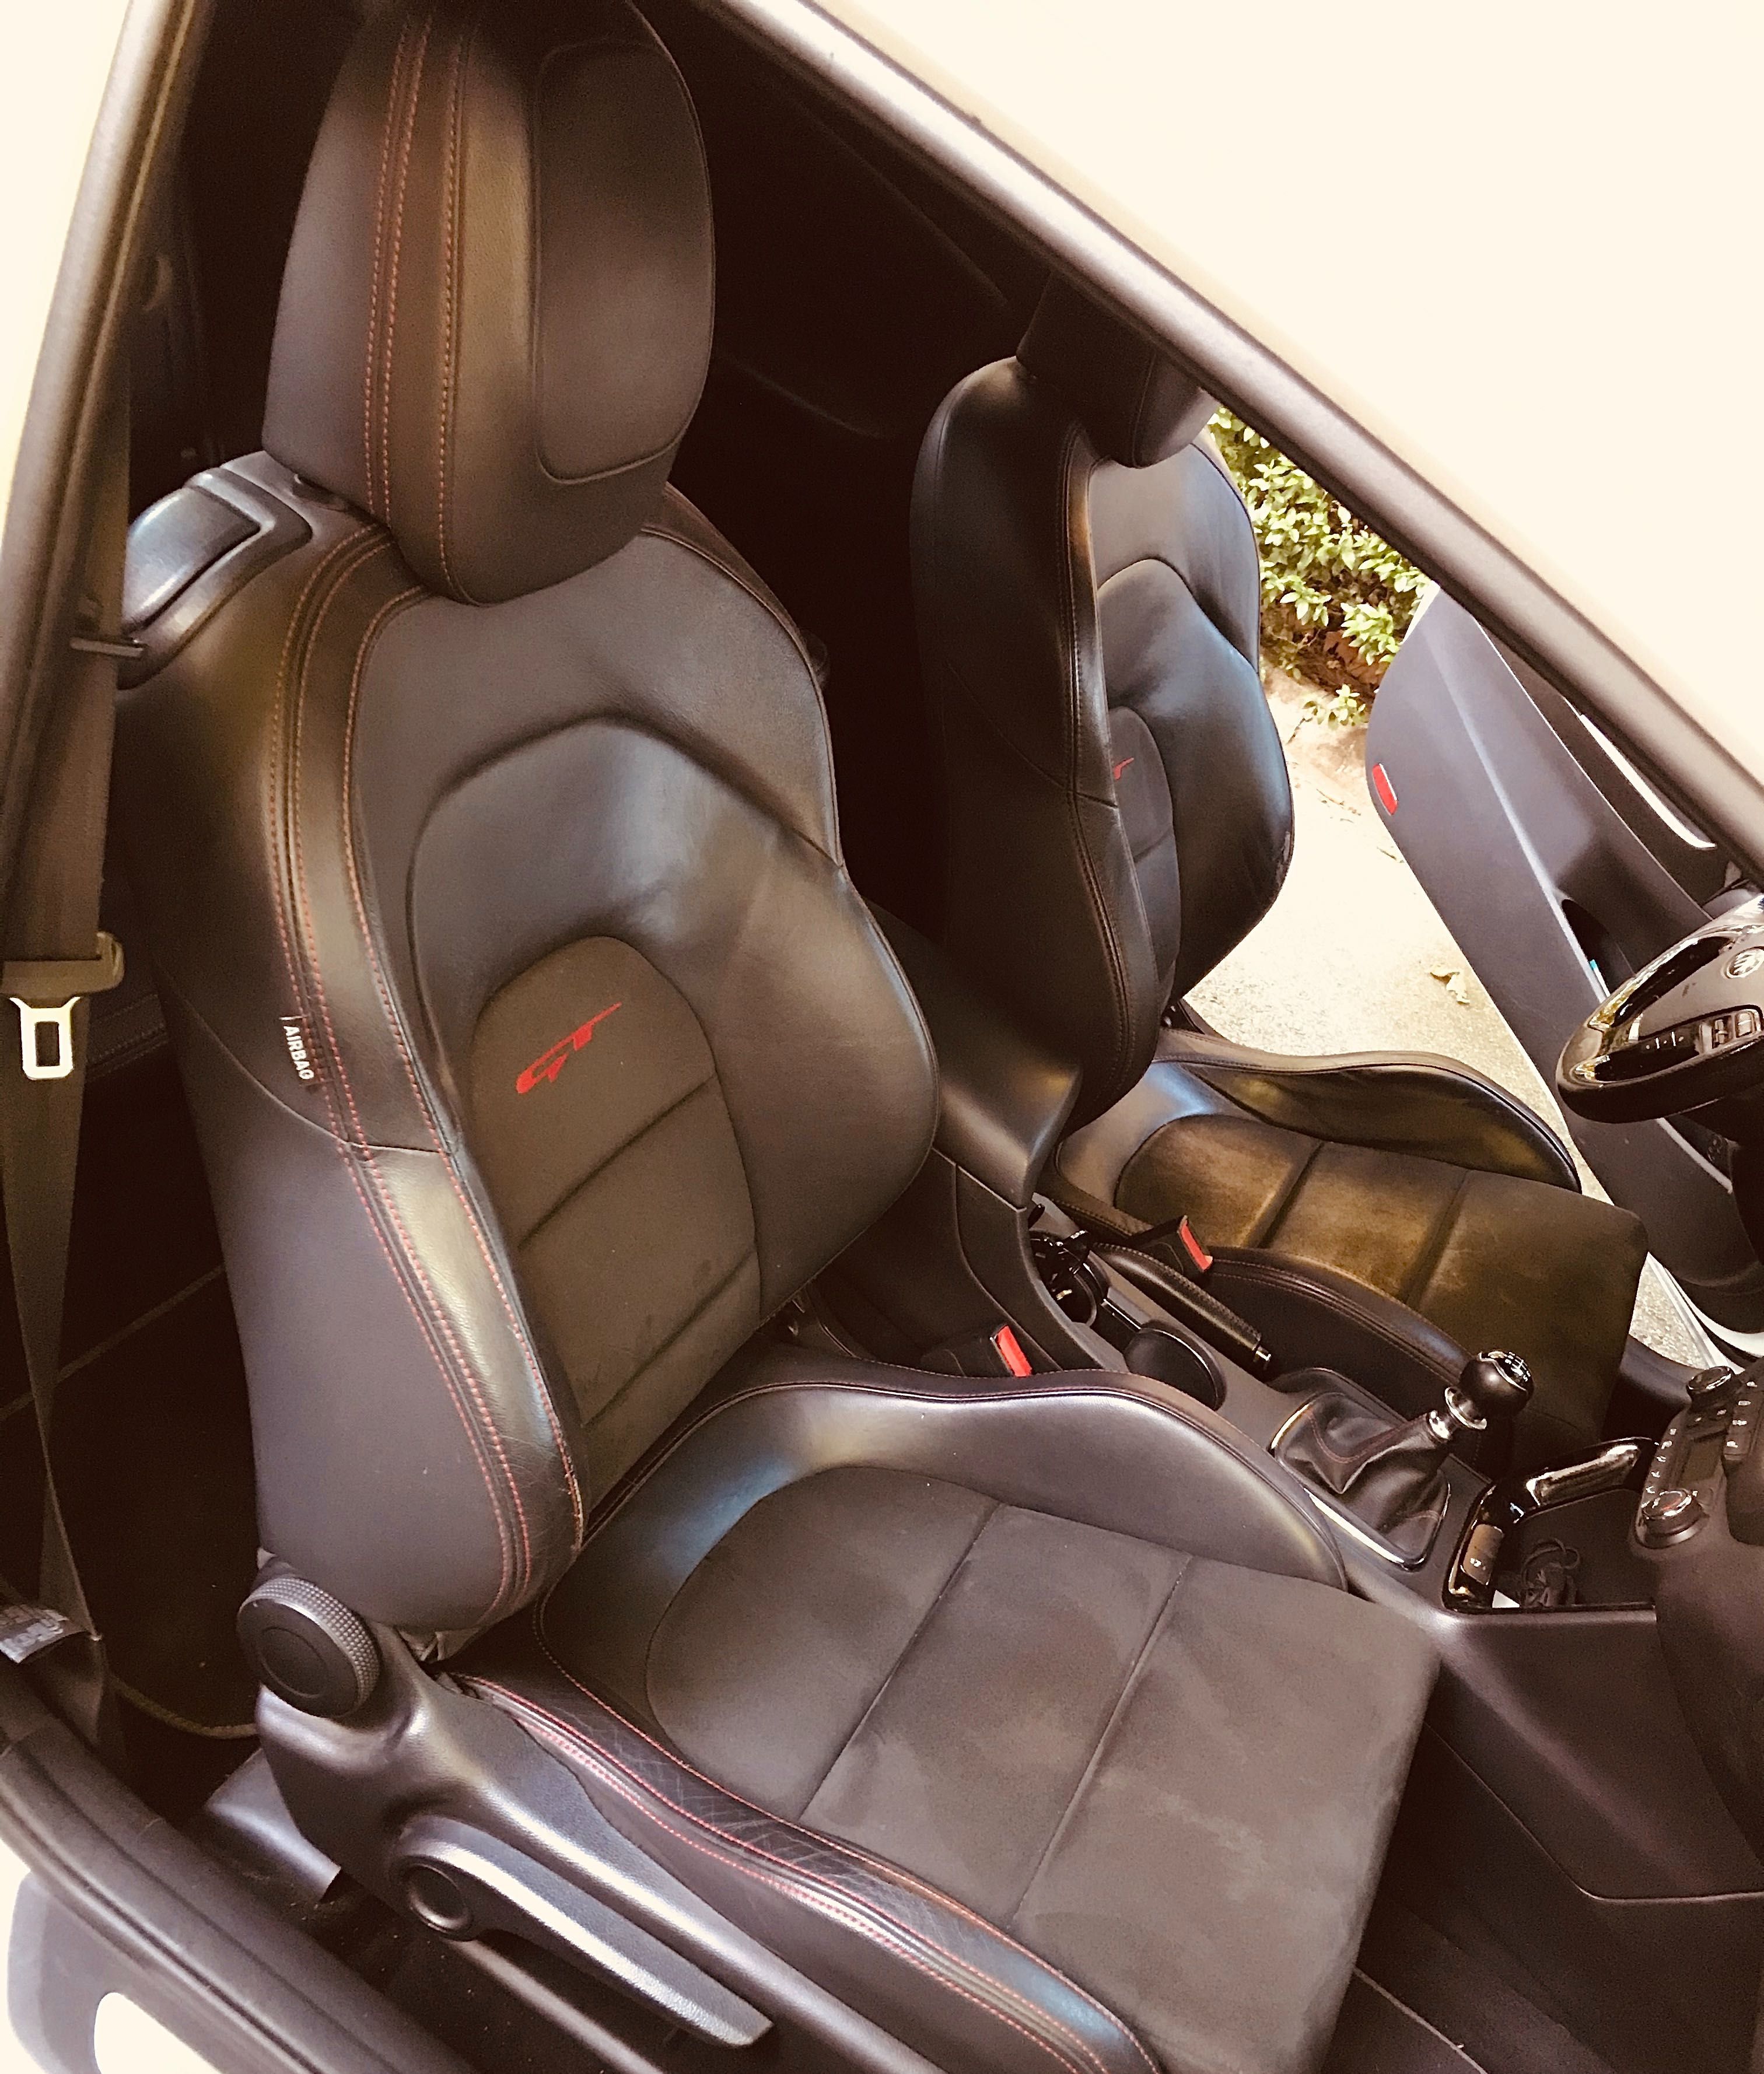 Kia ProCeed GT 1.6 Turbo 2015, 220 HP